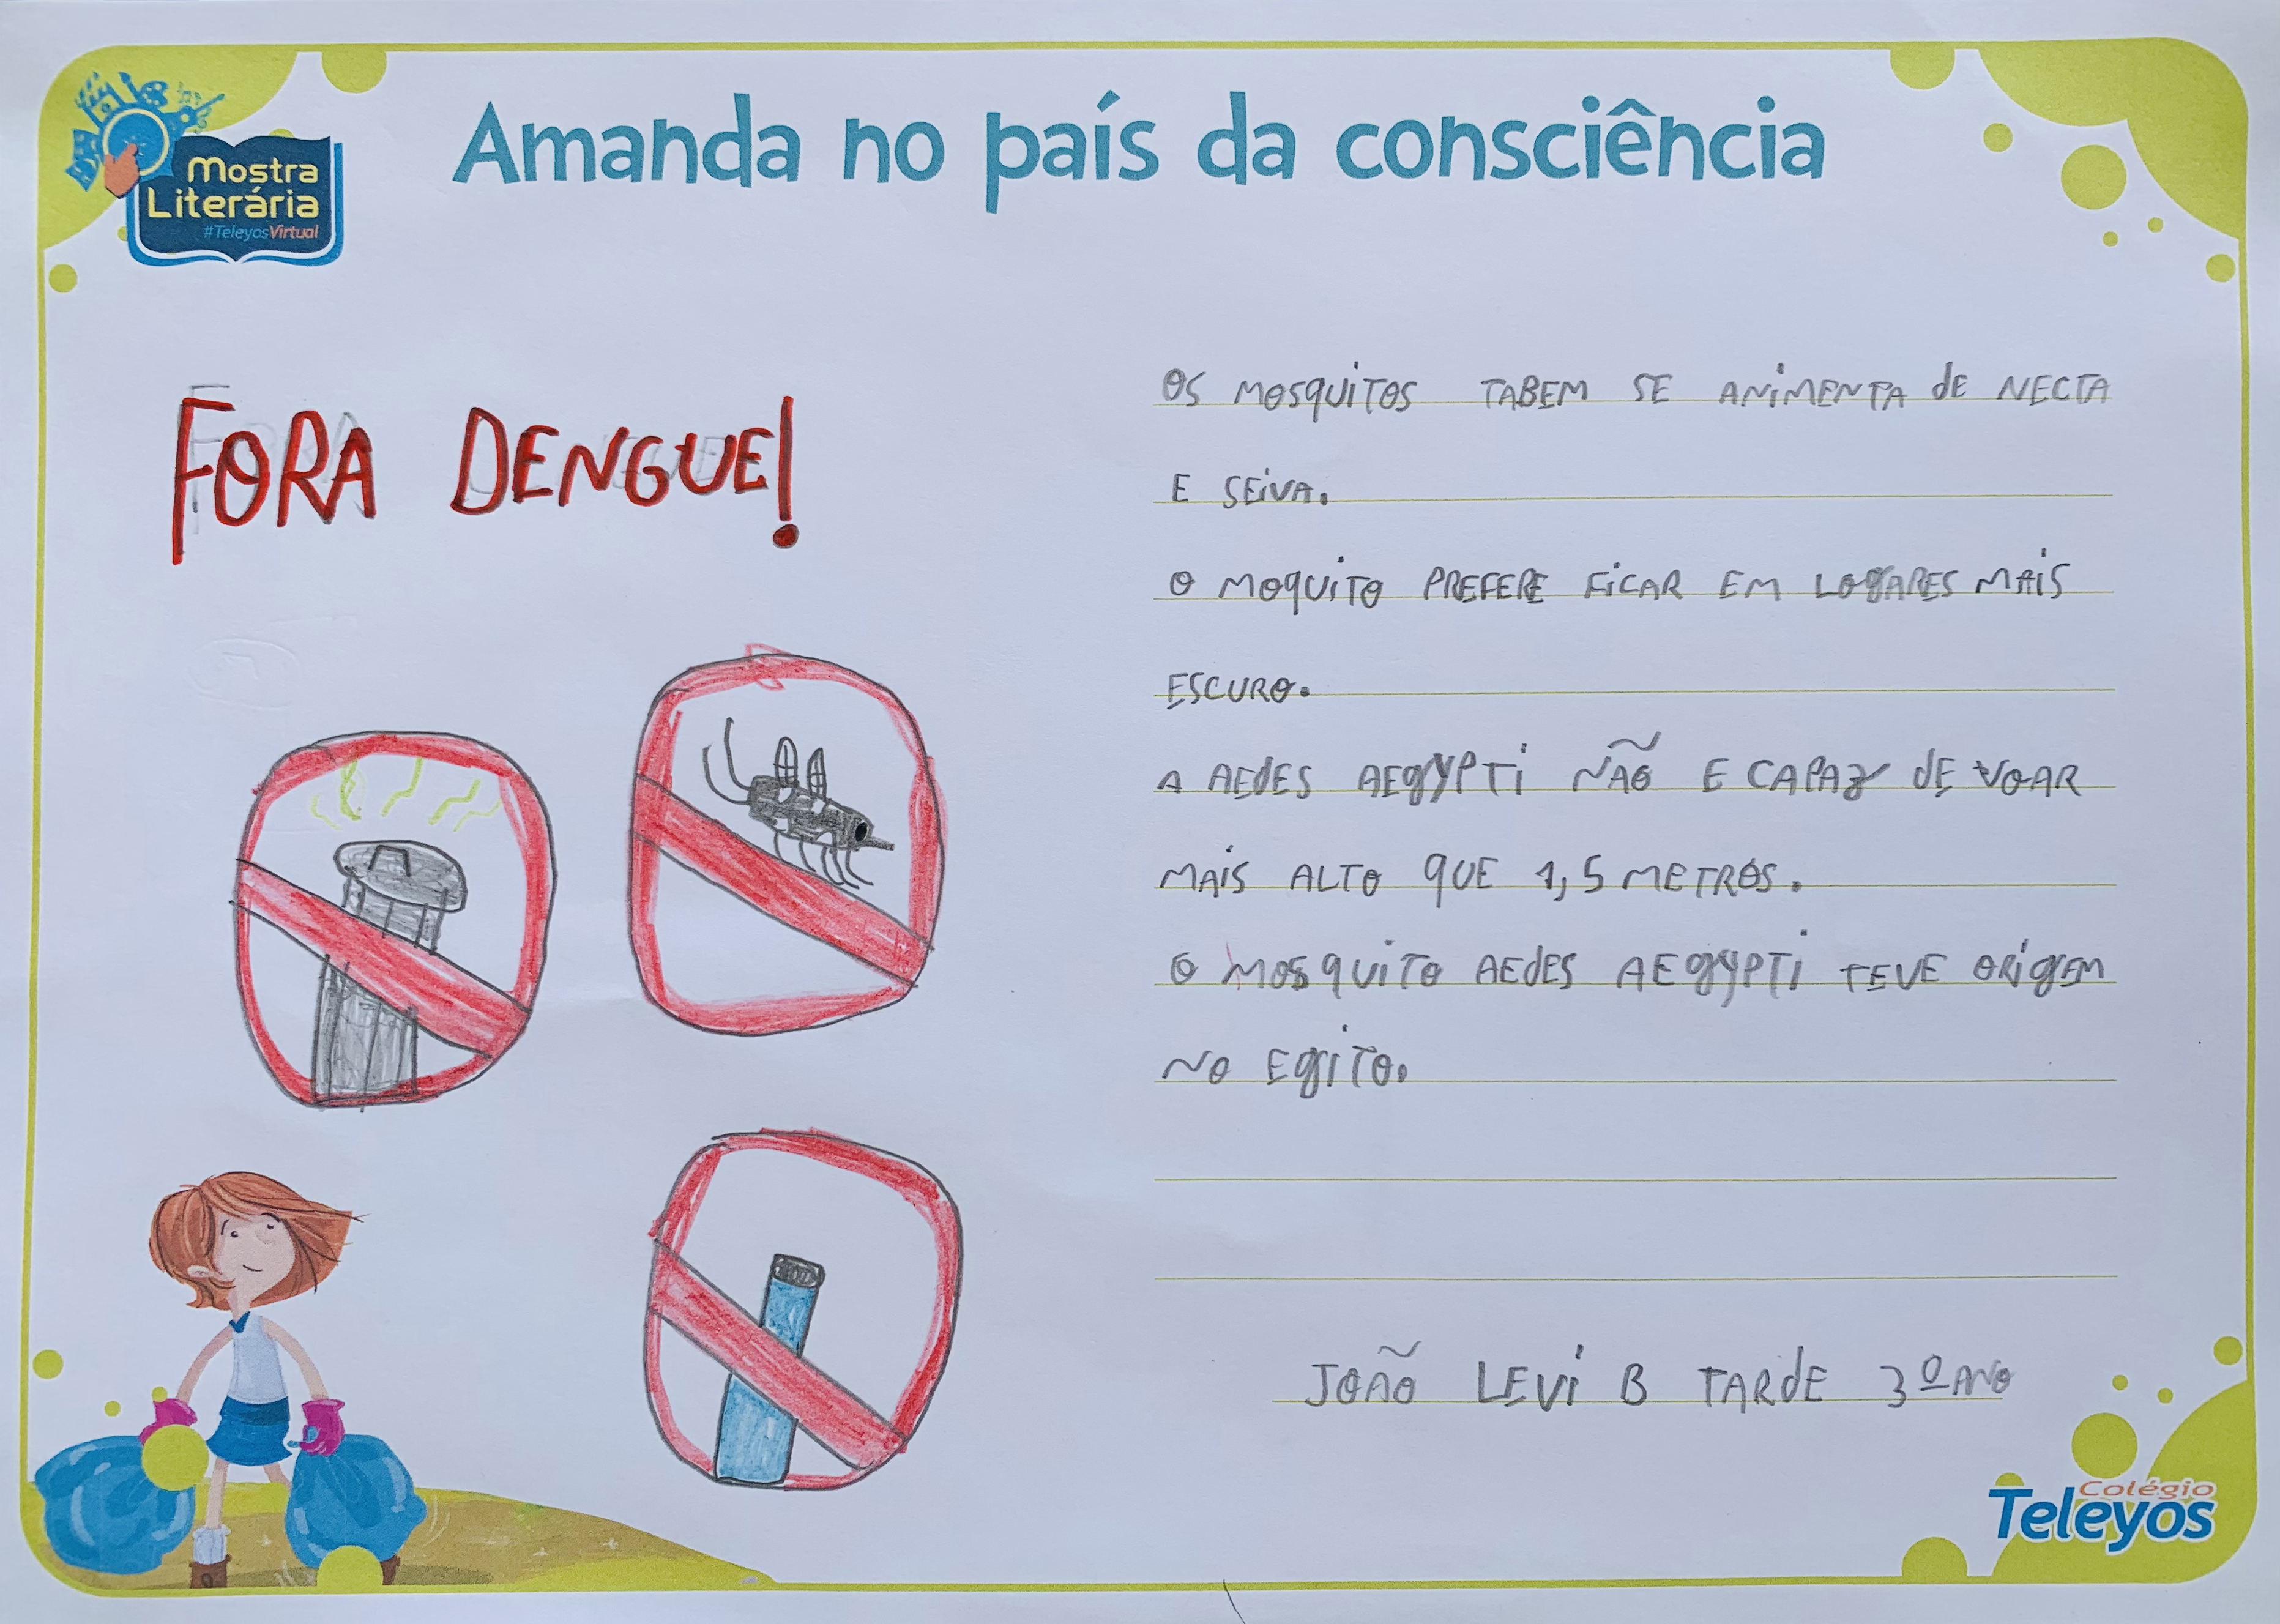 JOÃO LEVI - Fora dengue!